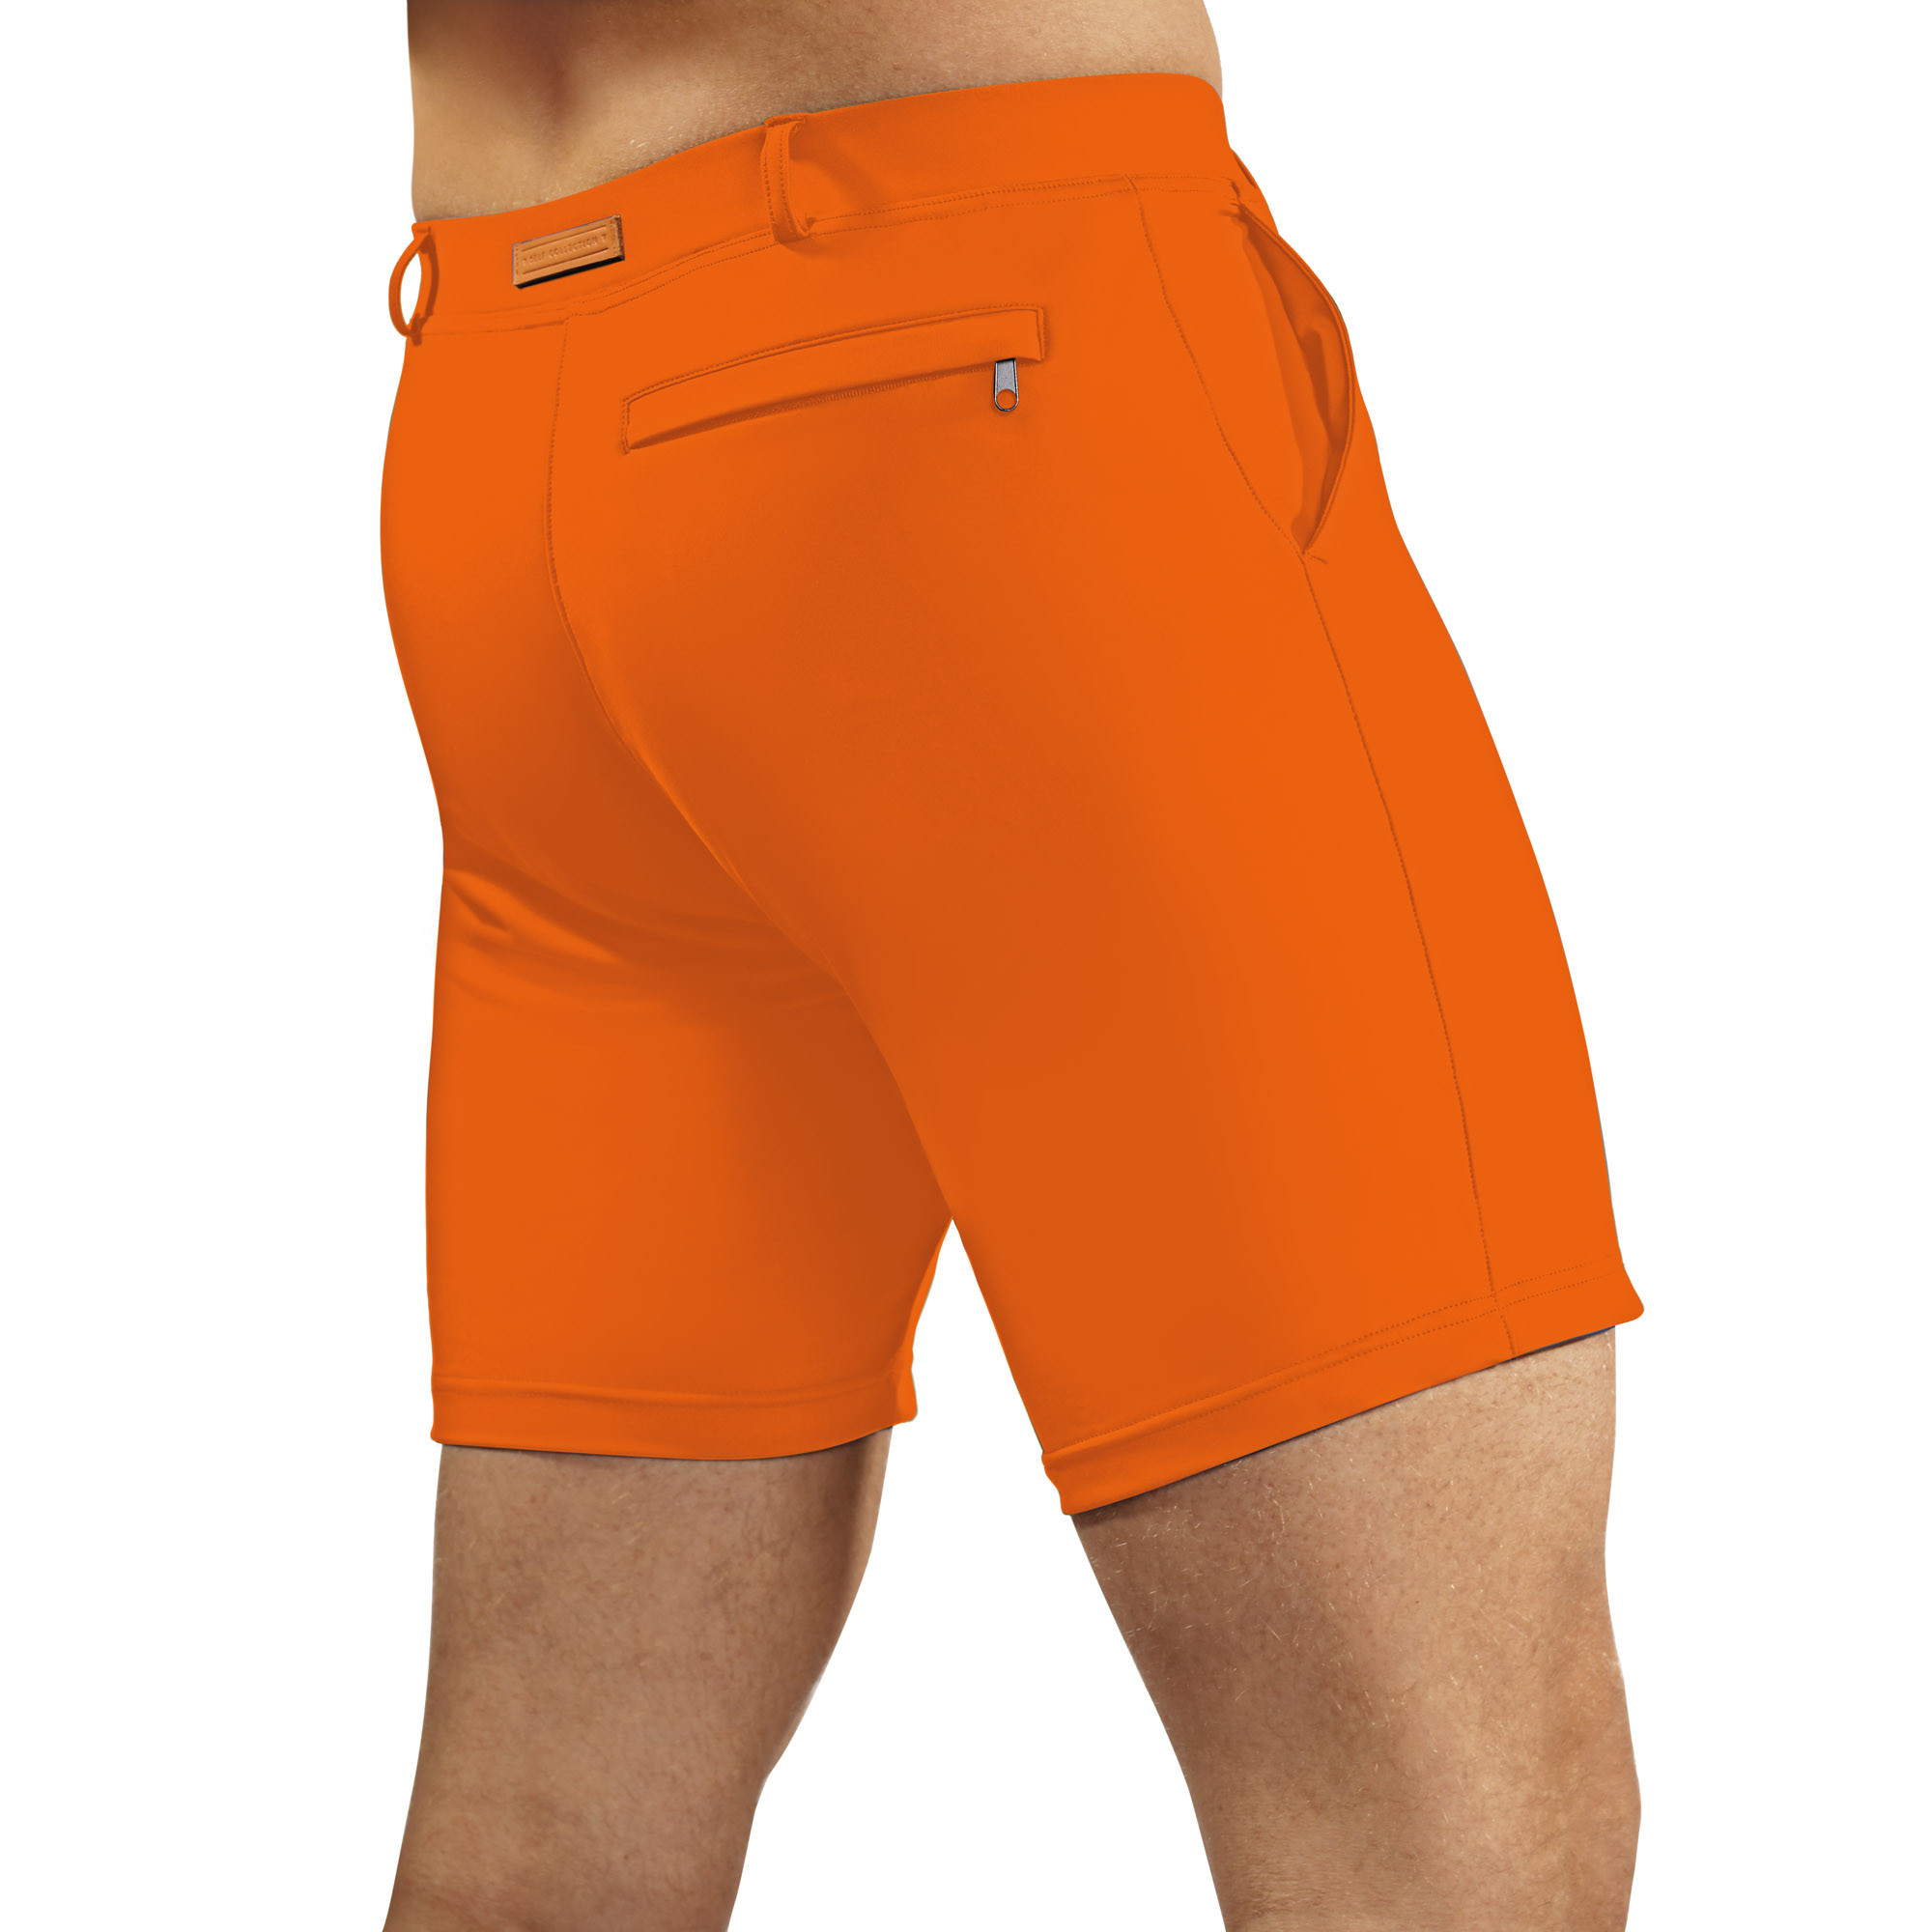 Pánské plavky Swimming shorts comfort26 oranžové - Self 2XL